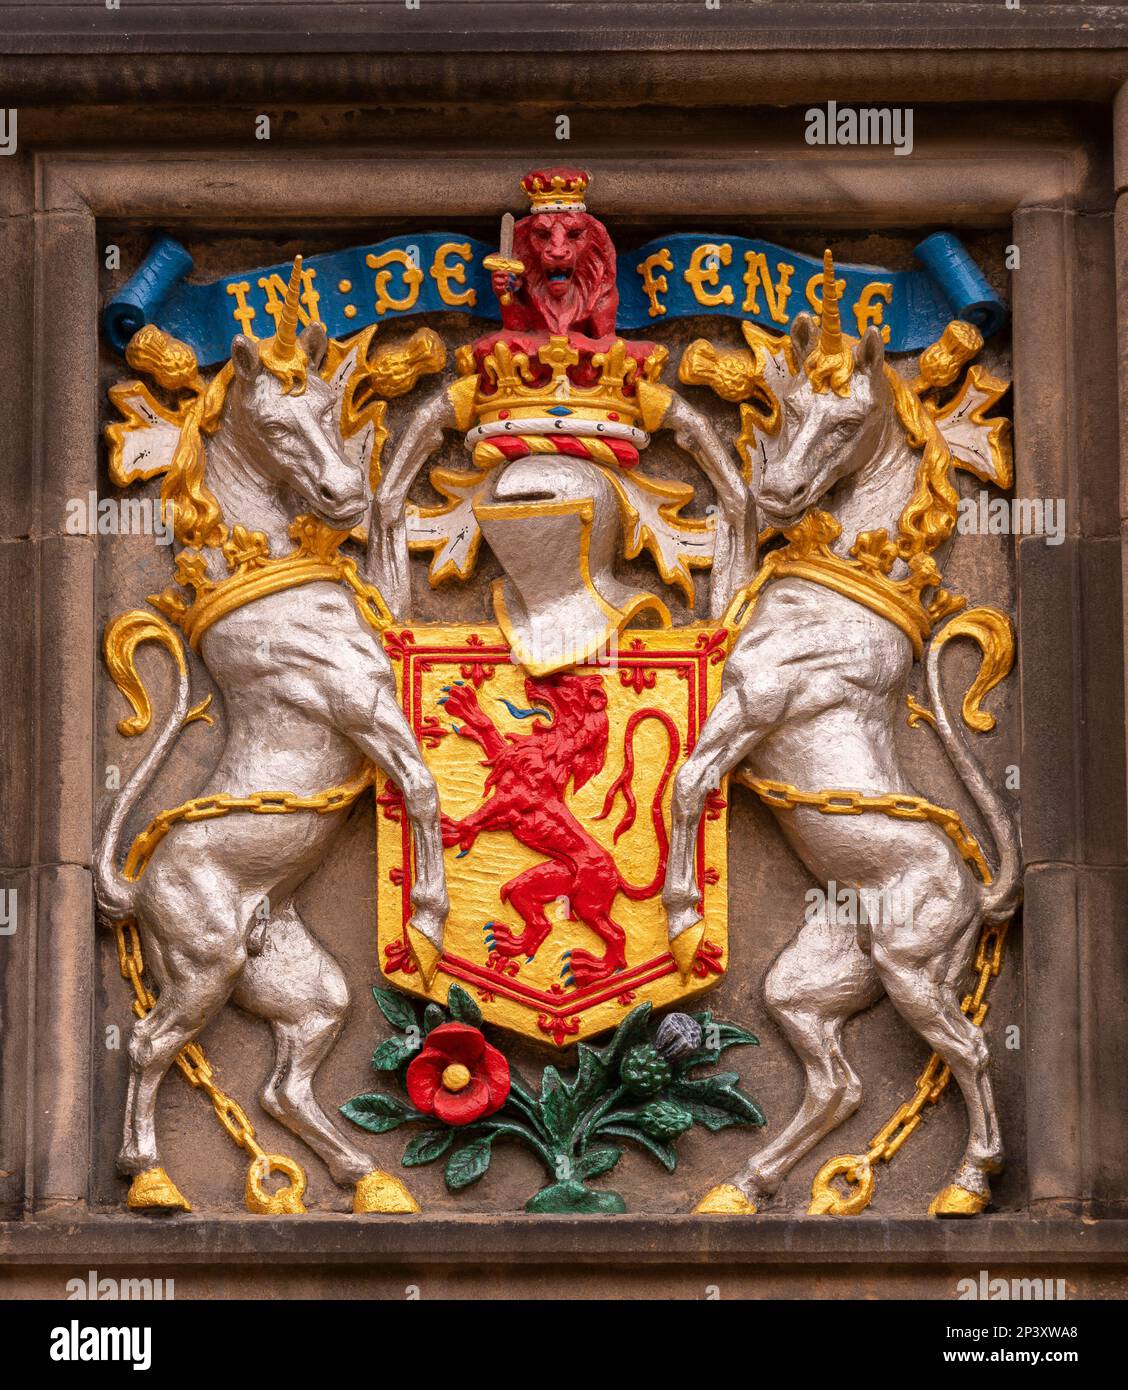 EDIMBURGO, SCOZIA, EUROPA - stemma all'esterno dell'edificio Great Hall, Castello di Edimburgo. Foto Stock